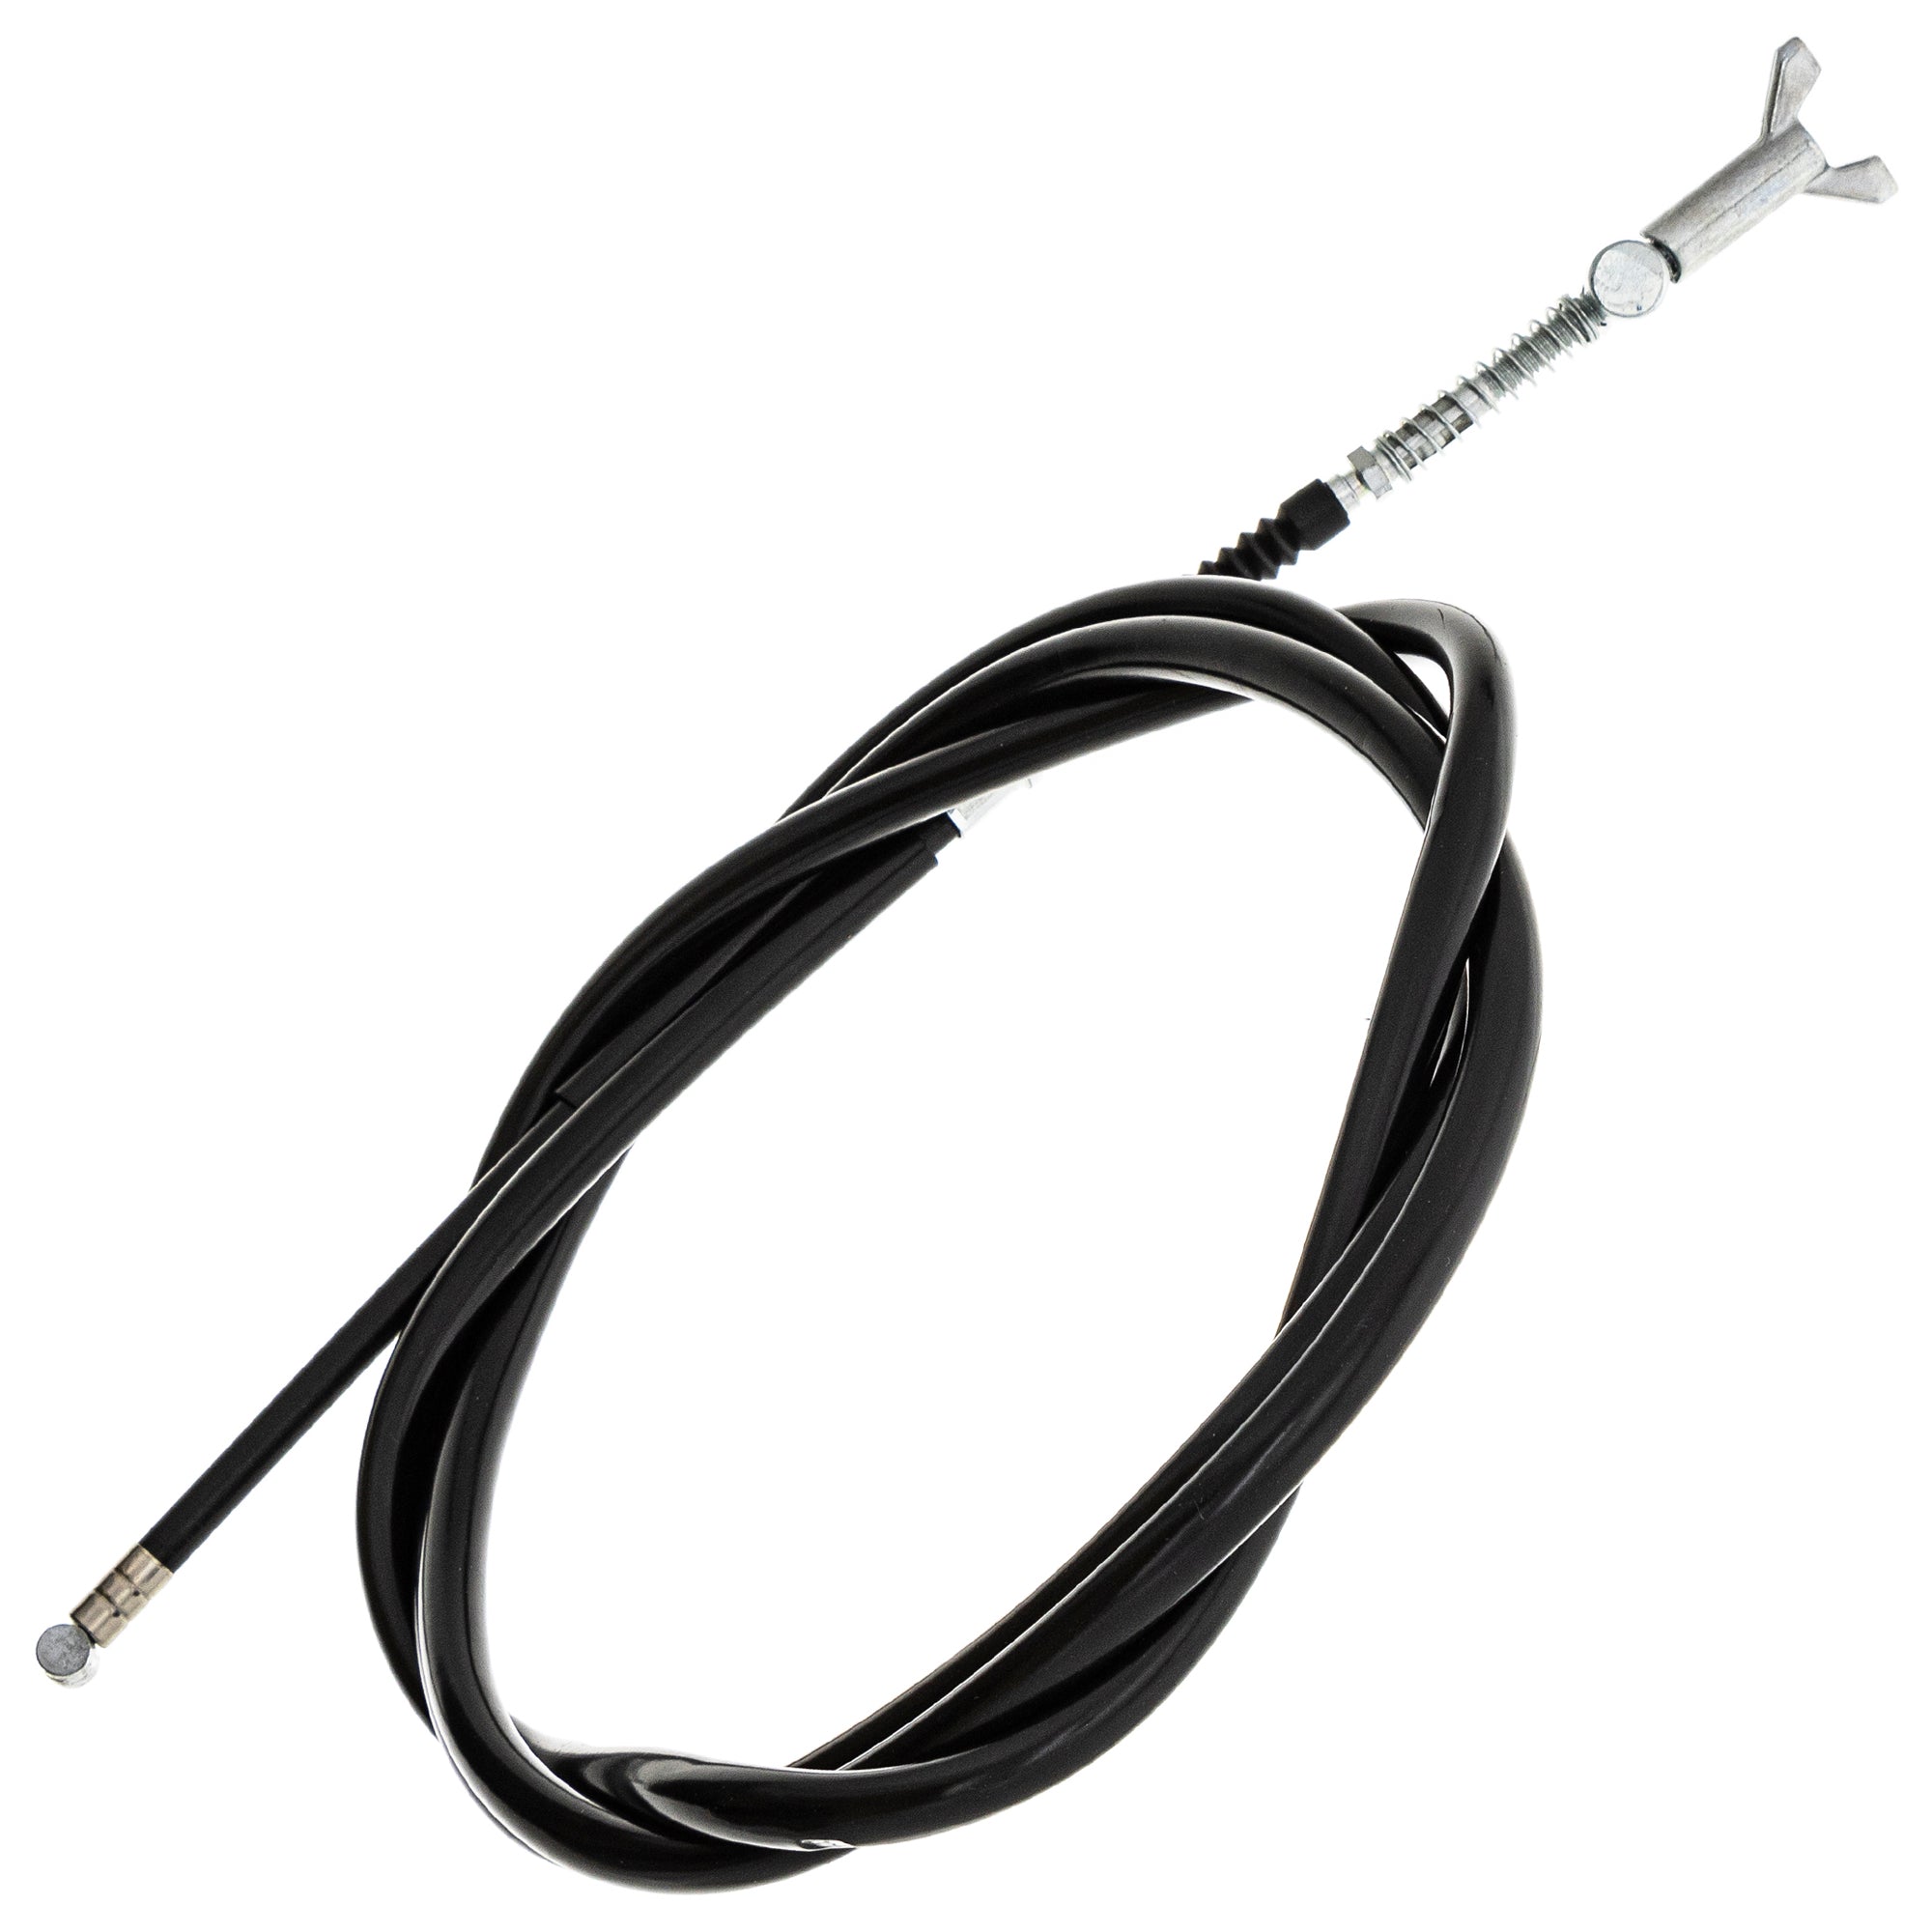 Rear Hand Brake Cable For Kawasaki Suzuki K5400-51211 K5400-50020 K5400-50012 54005-0020